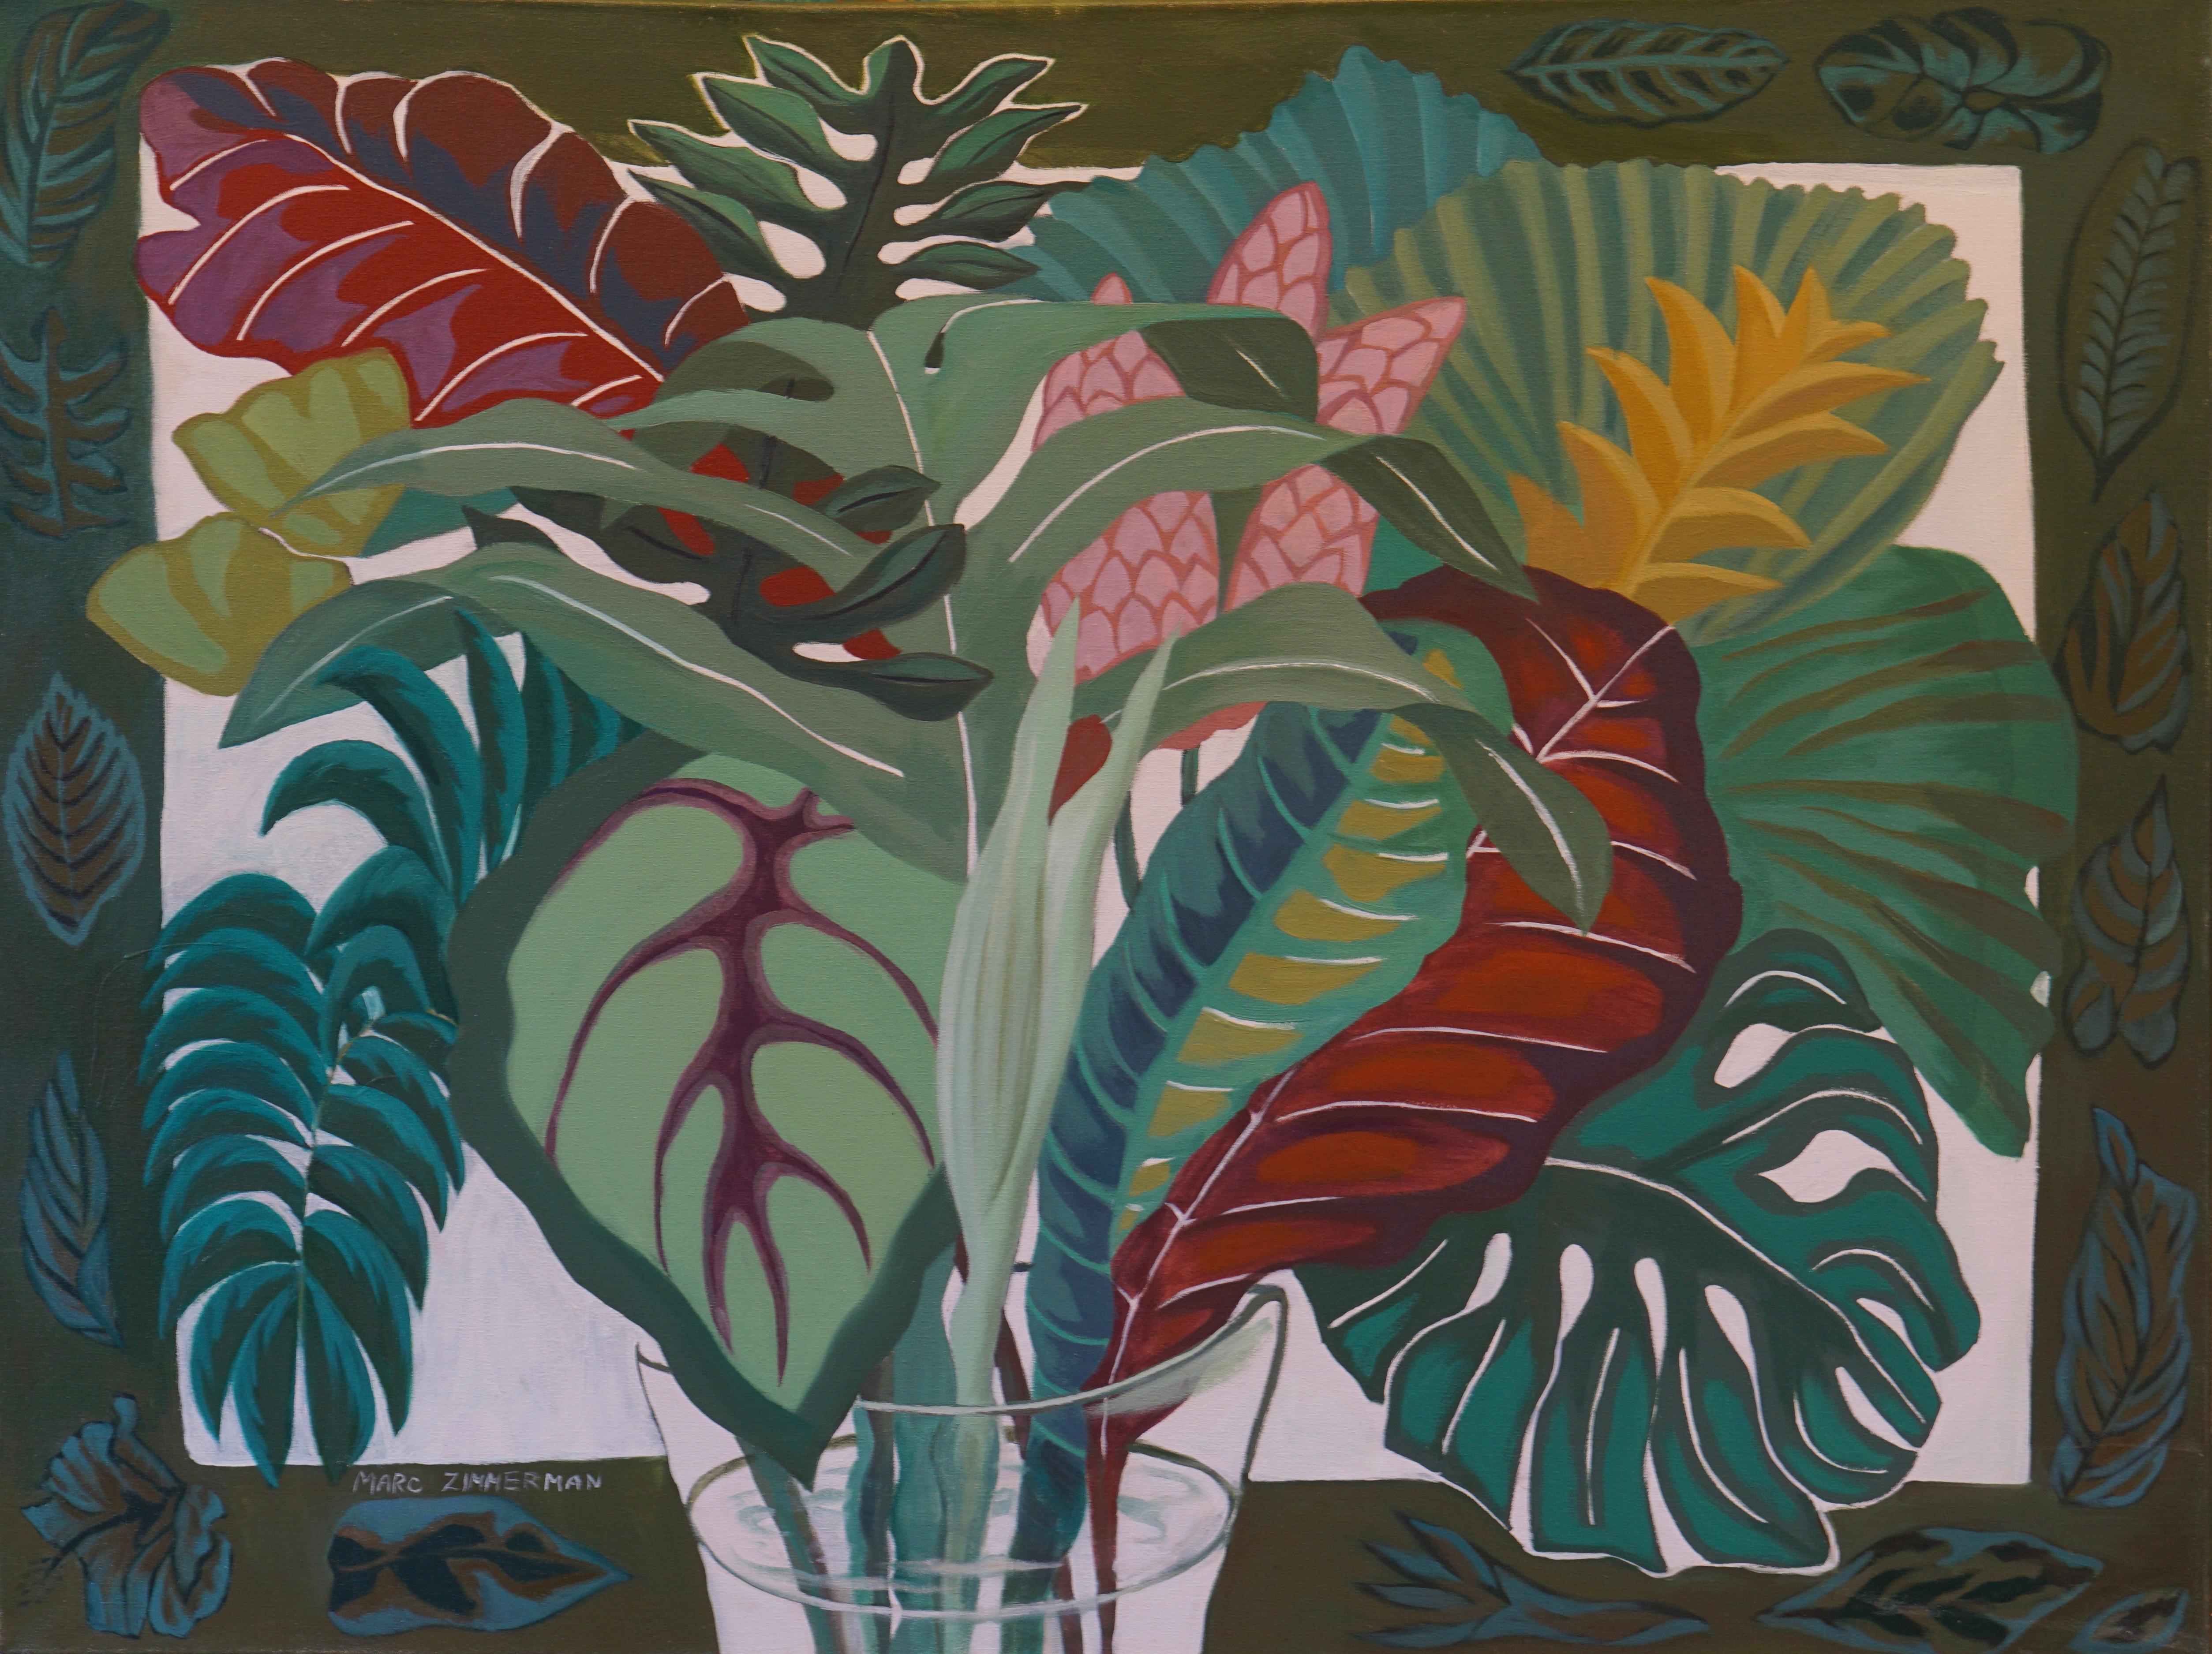 Tropische Blätter werden in all ihren prächtigen Formen und Mustern in einem farbenfrohen Geflecht hervorgehoben, das von einem hawaiianischen Motiv eingerahmt wird.

Tropischer Blumenstrauß - Interieur Malerei - Öl auf Leinwand von Marc